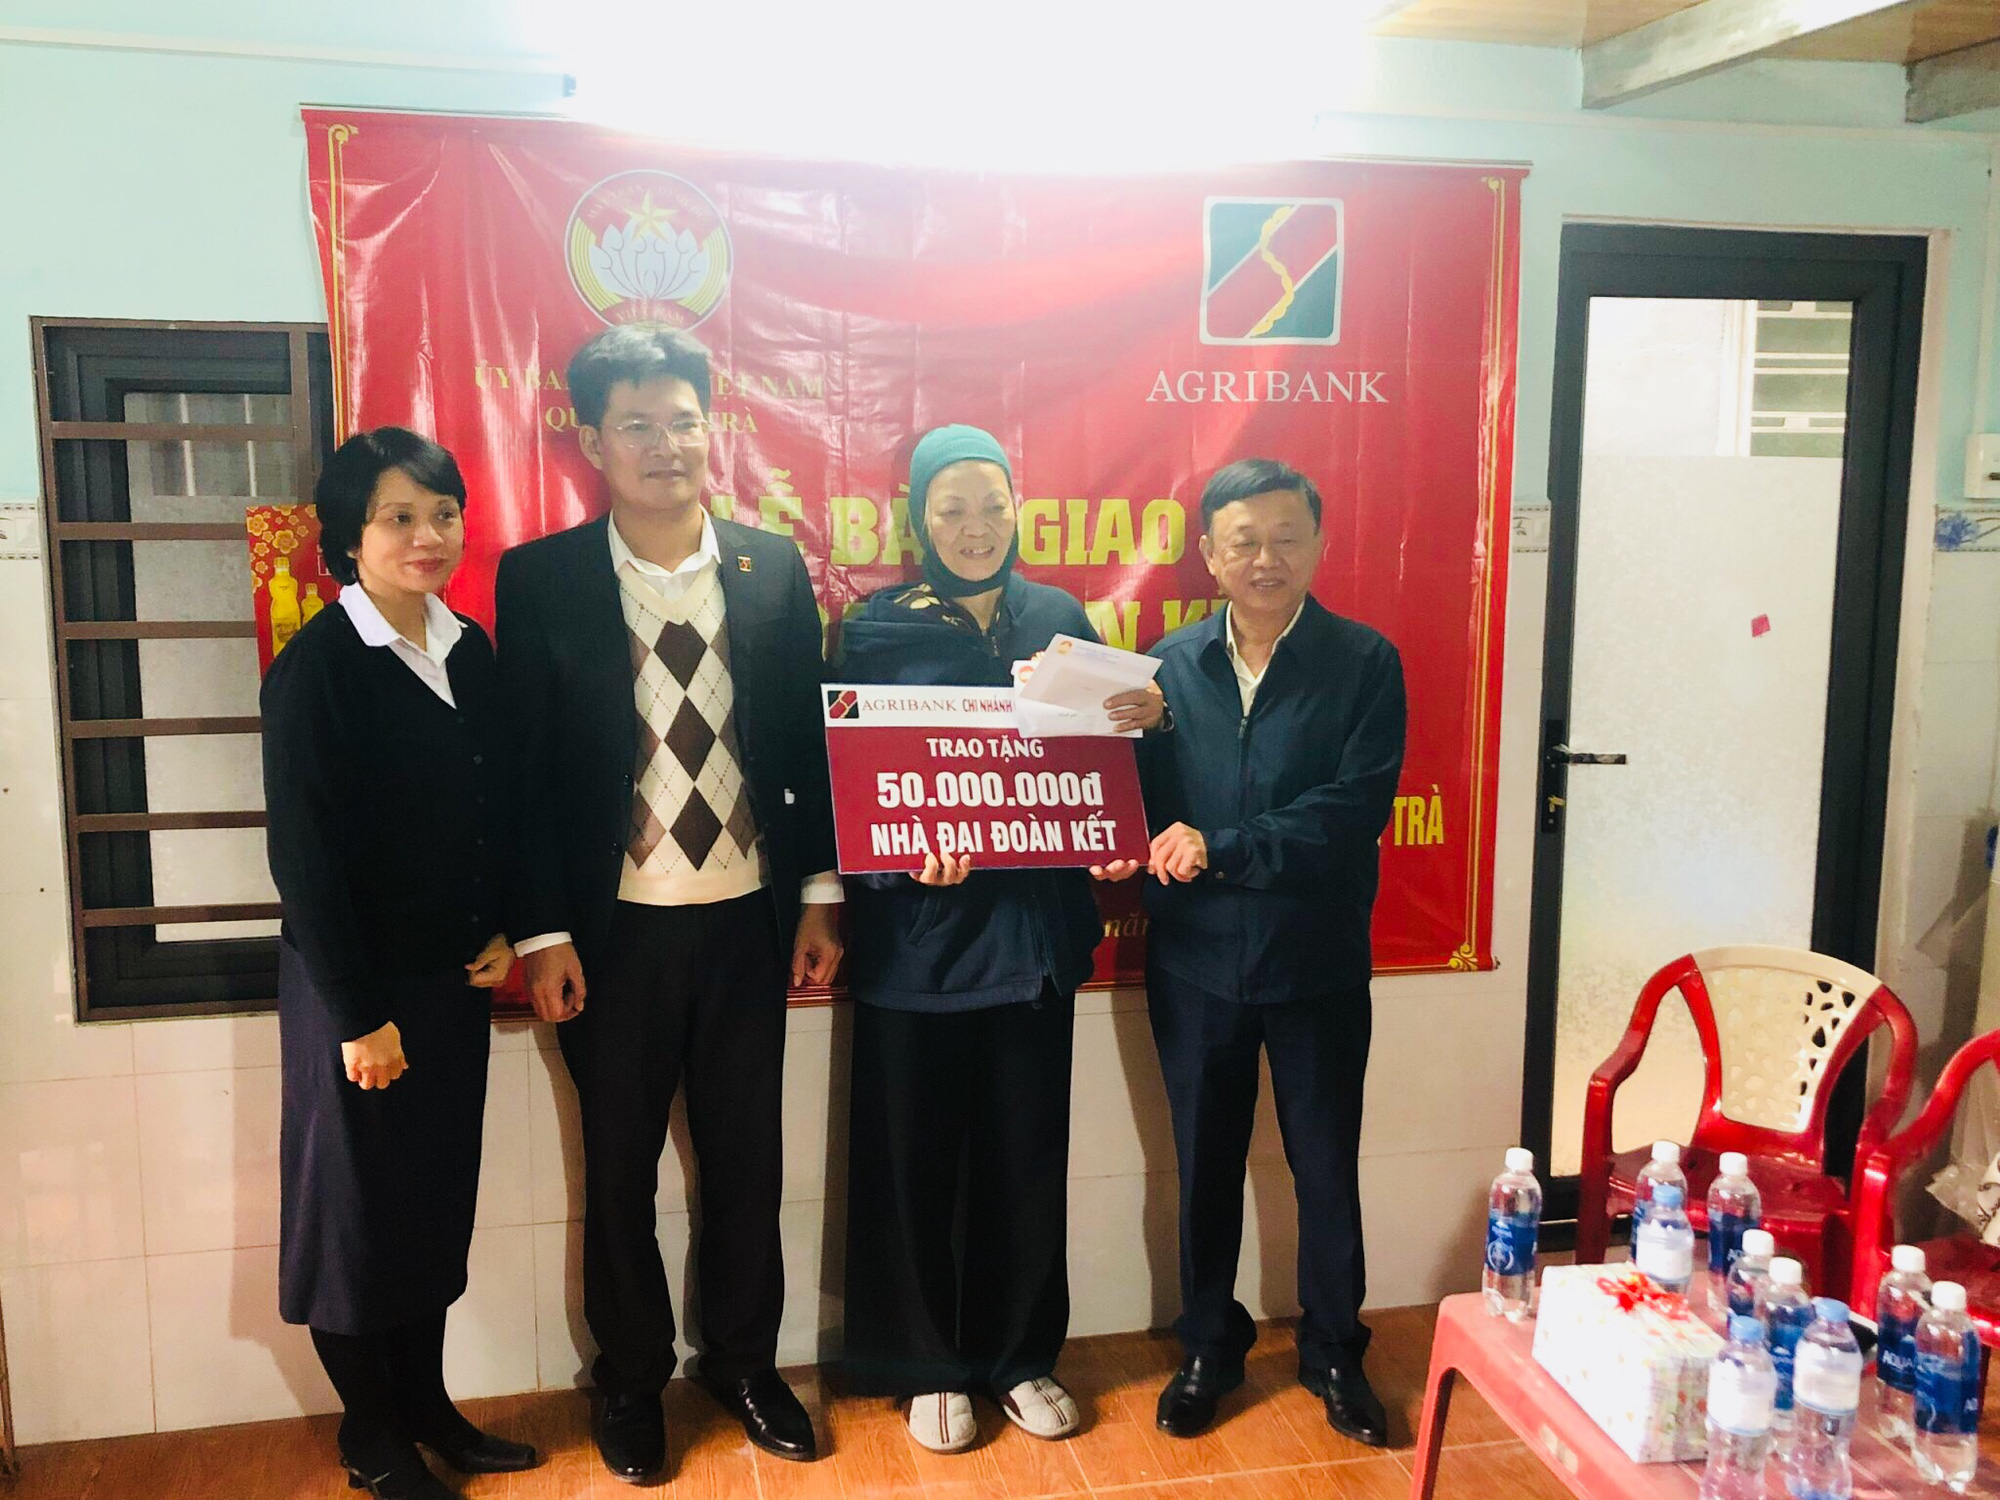 Đà Nẵng: Agribank Sơn Trà tài trợ xây dựng nhà đại đoàn kết cho gia đình khó khăn - Ảnh 1.